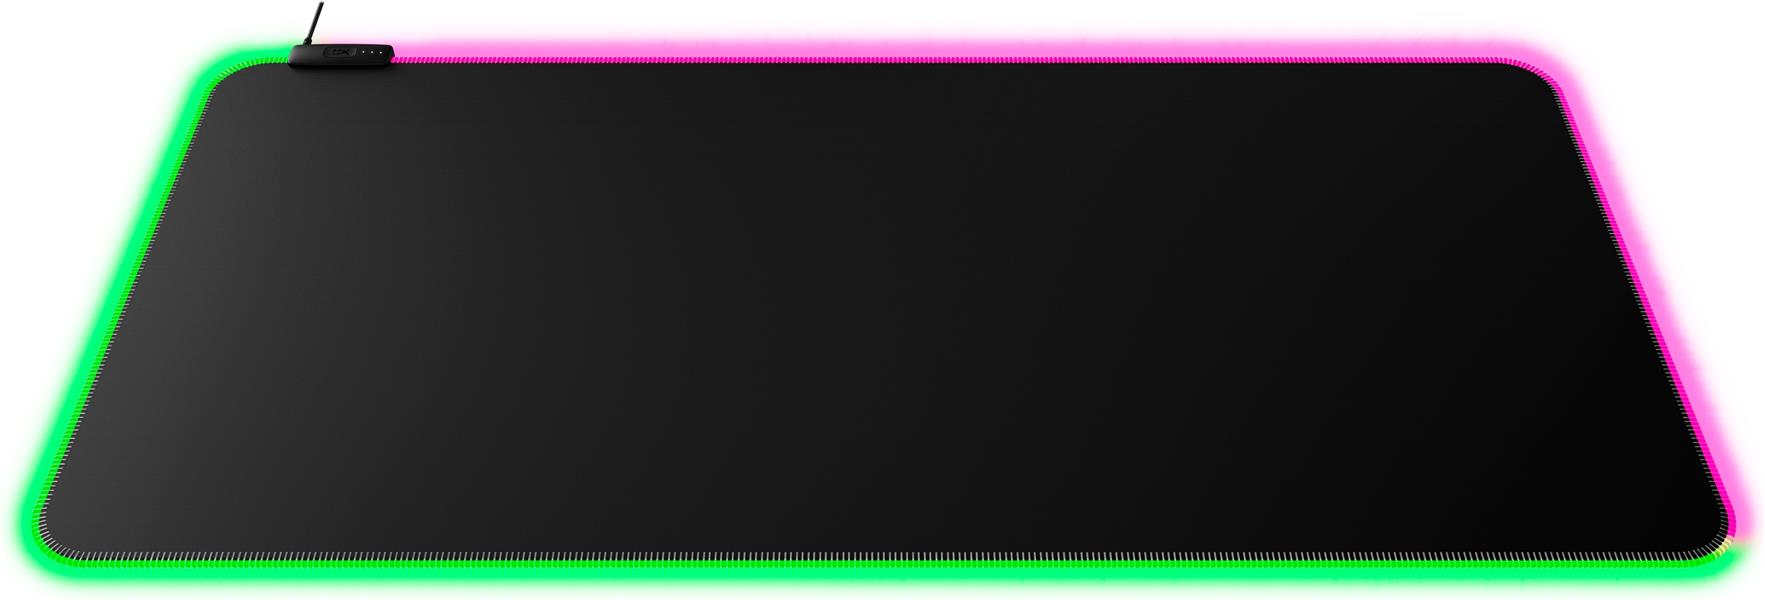 HyperX Pulsefire Mat - RGB-muismat voor gaming - stof (XL)